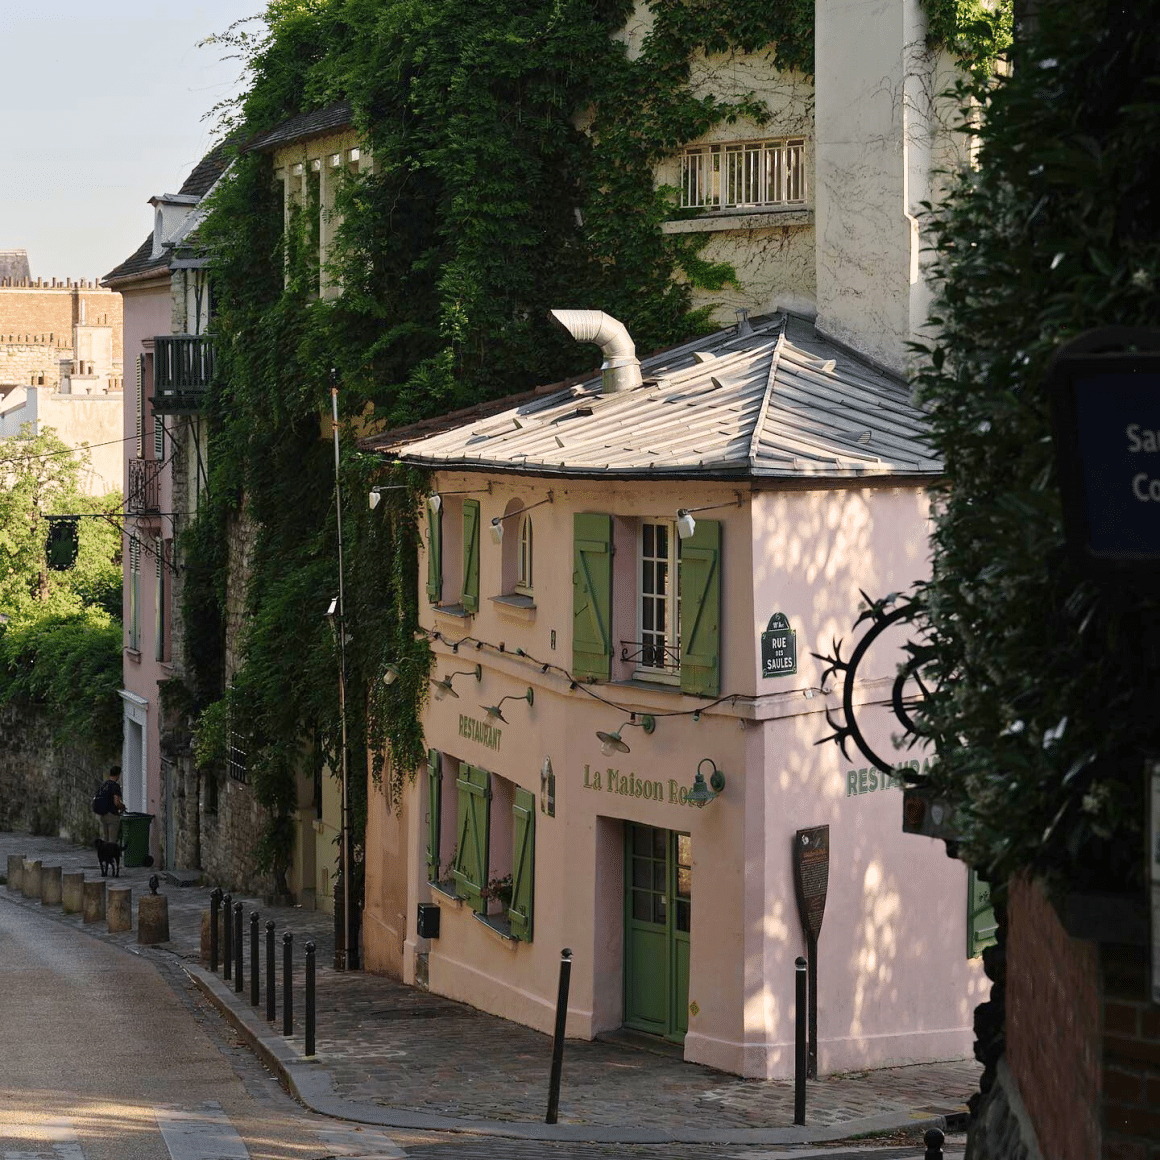 La Maison rose, restaurant aflat intr-o casuta roz, cu obloane verzi, pe o mca strada din Montmartre Paris. Unul din cele mai romantice locuri din Paris.